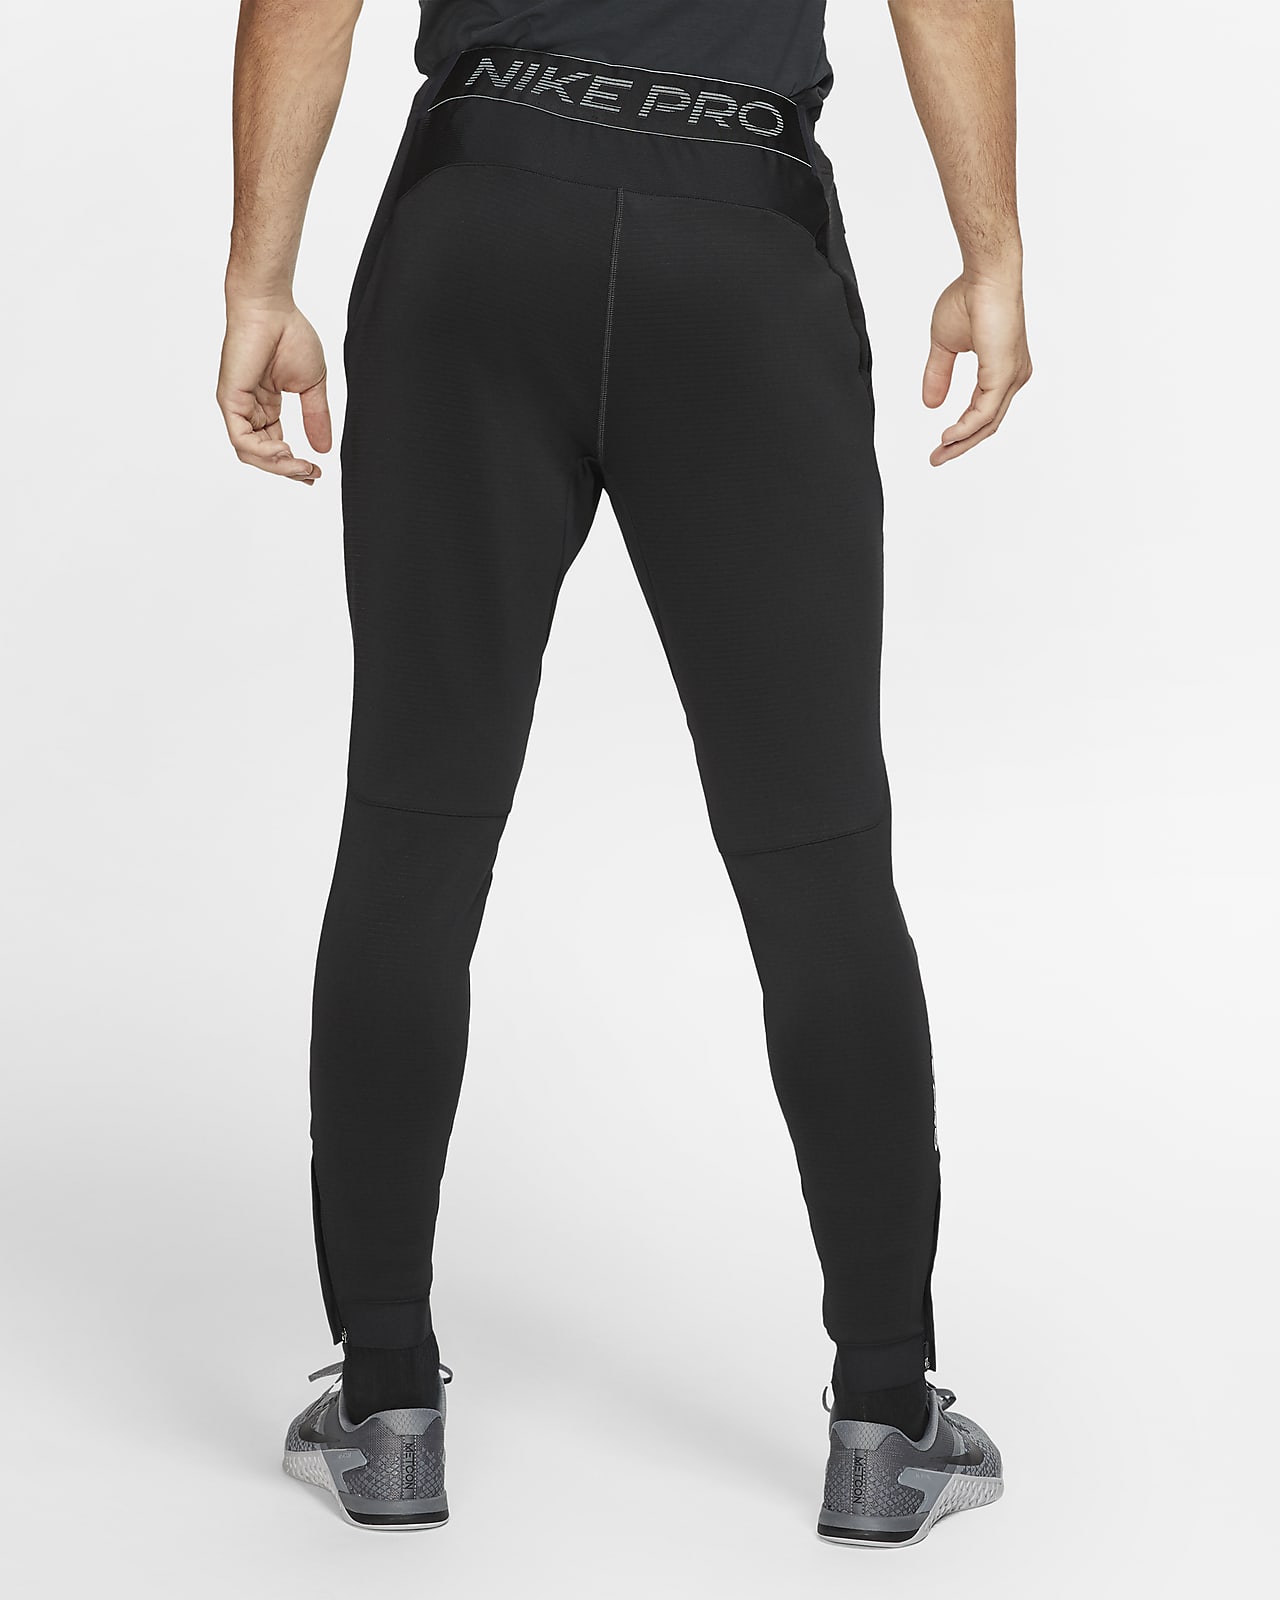 Nike Pro Men's Pants. Nike.com